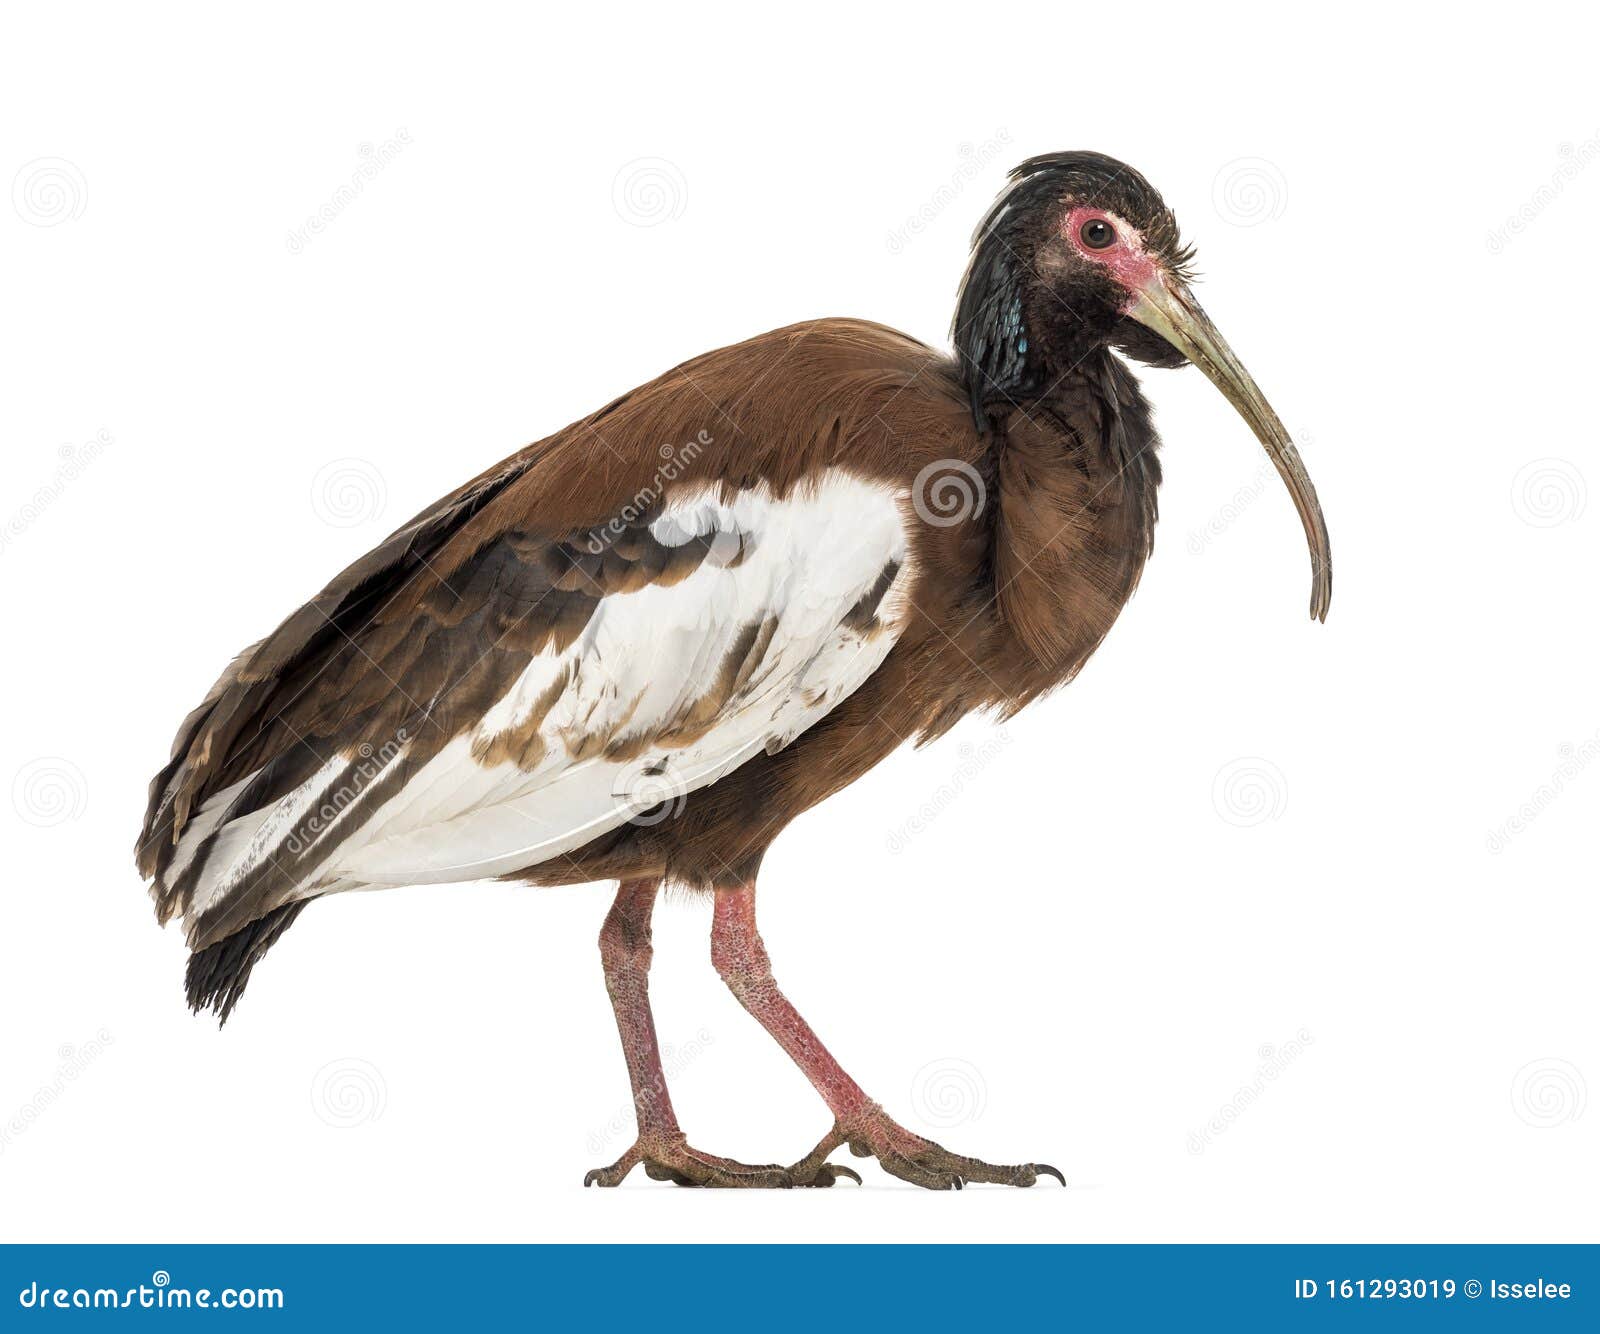 madagascan ibis, lophotibis cristata,  on white